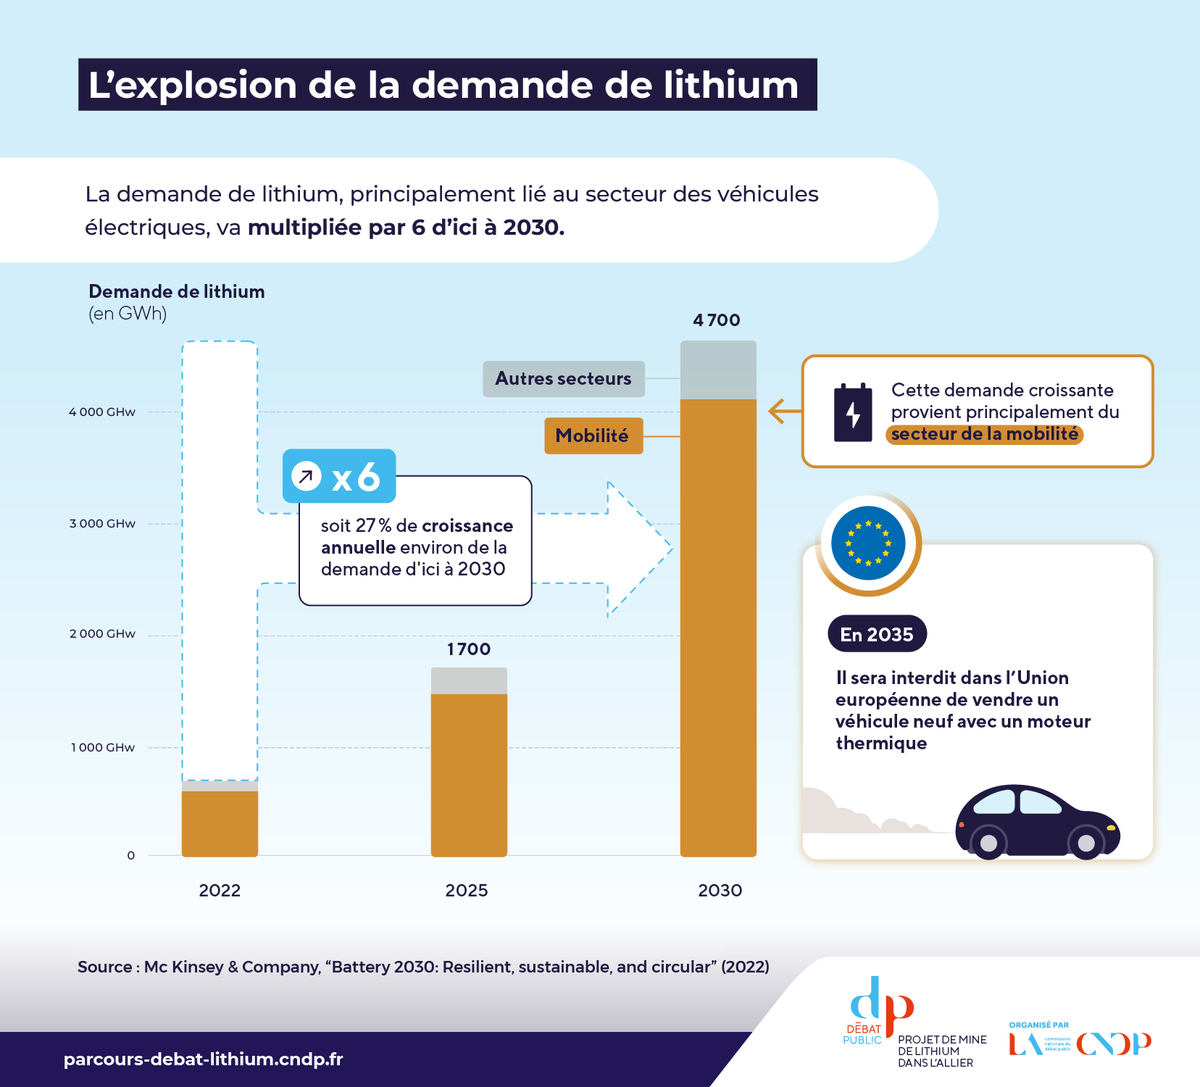 L'infographie du mercredi 🔎 Explosion de la demande de lithium
🚗 Principalement liée au secteur des mobilités, elle devrait être multipliée par 6 d'ici à 2030.
⛔ En 2035, il sera interdit dans l'🇪🇺 de vendre un véhicule neuf avec un moteur thermique.

#debatlithium